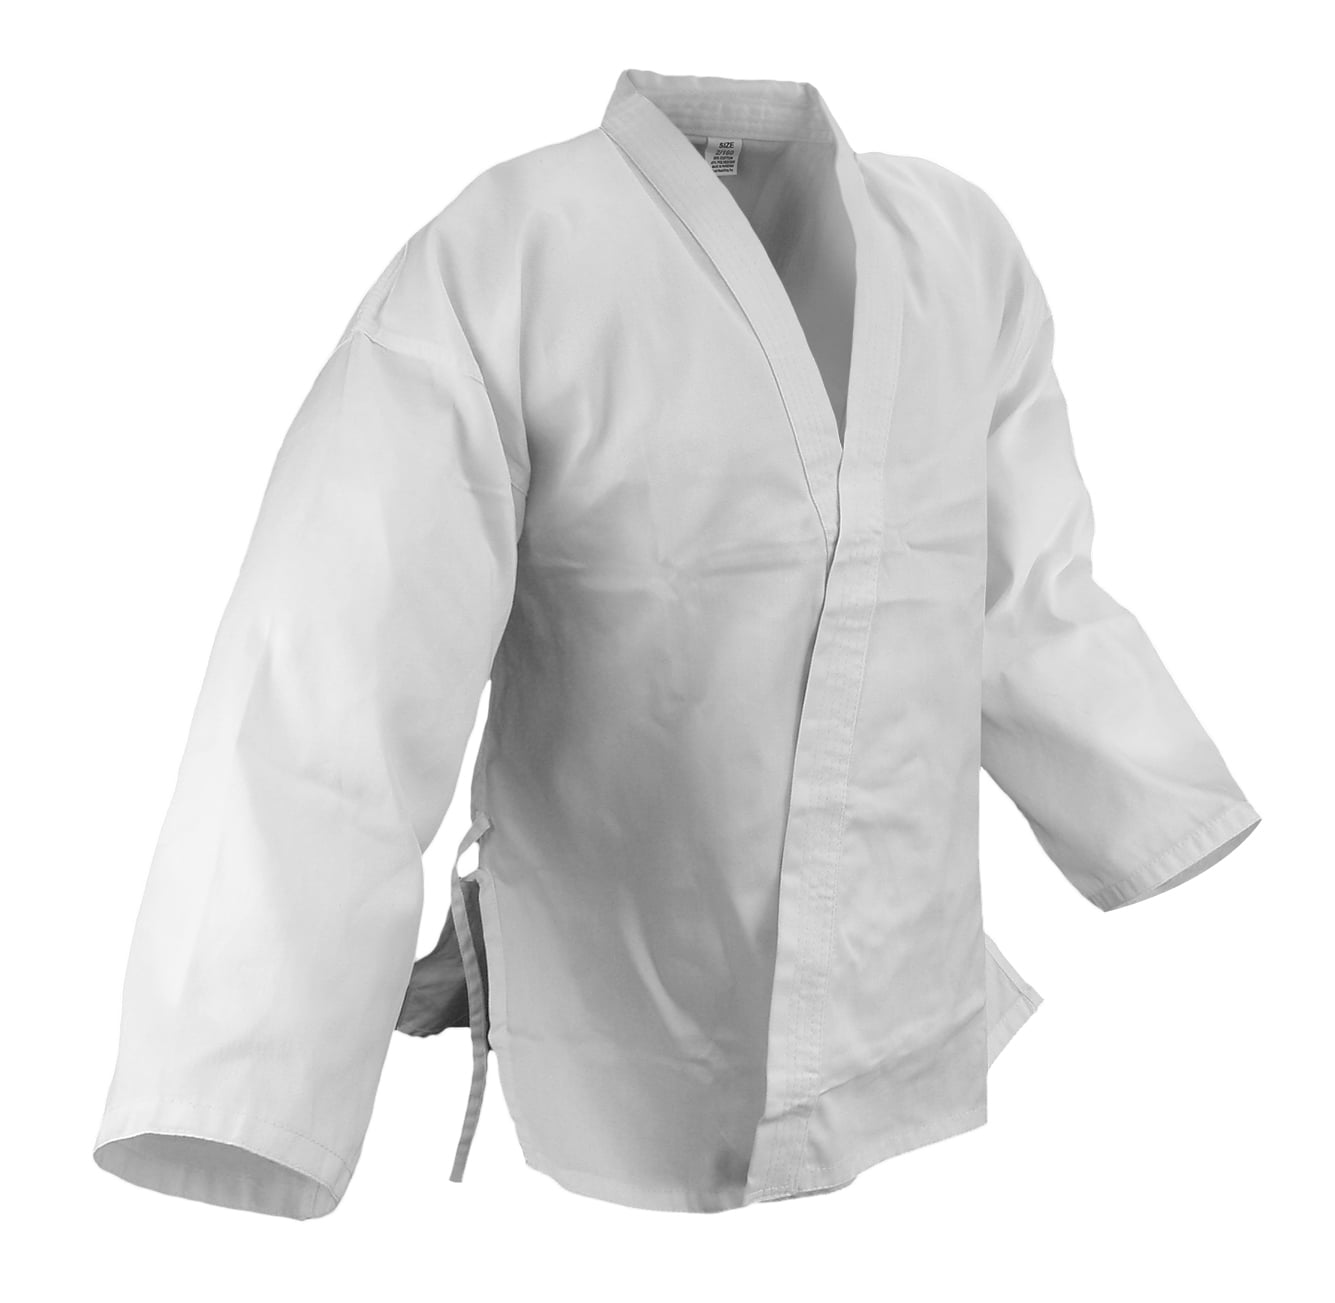 SIZE 10 Cotton/Poly blend New Karate 7.5oz White Gi Uniform w/White Belt 